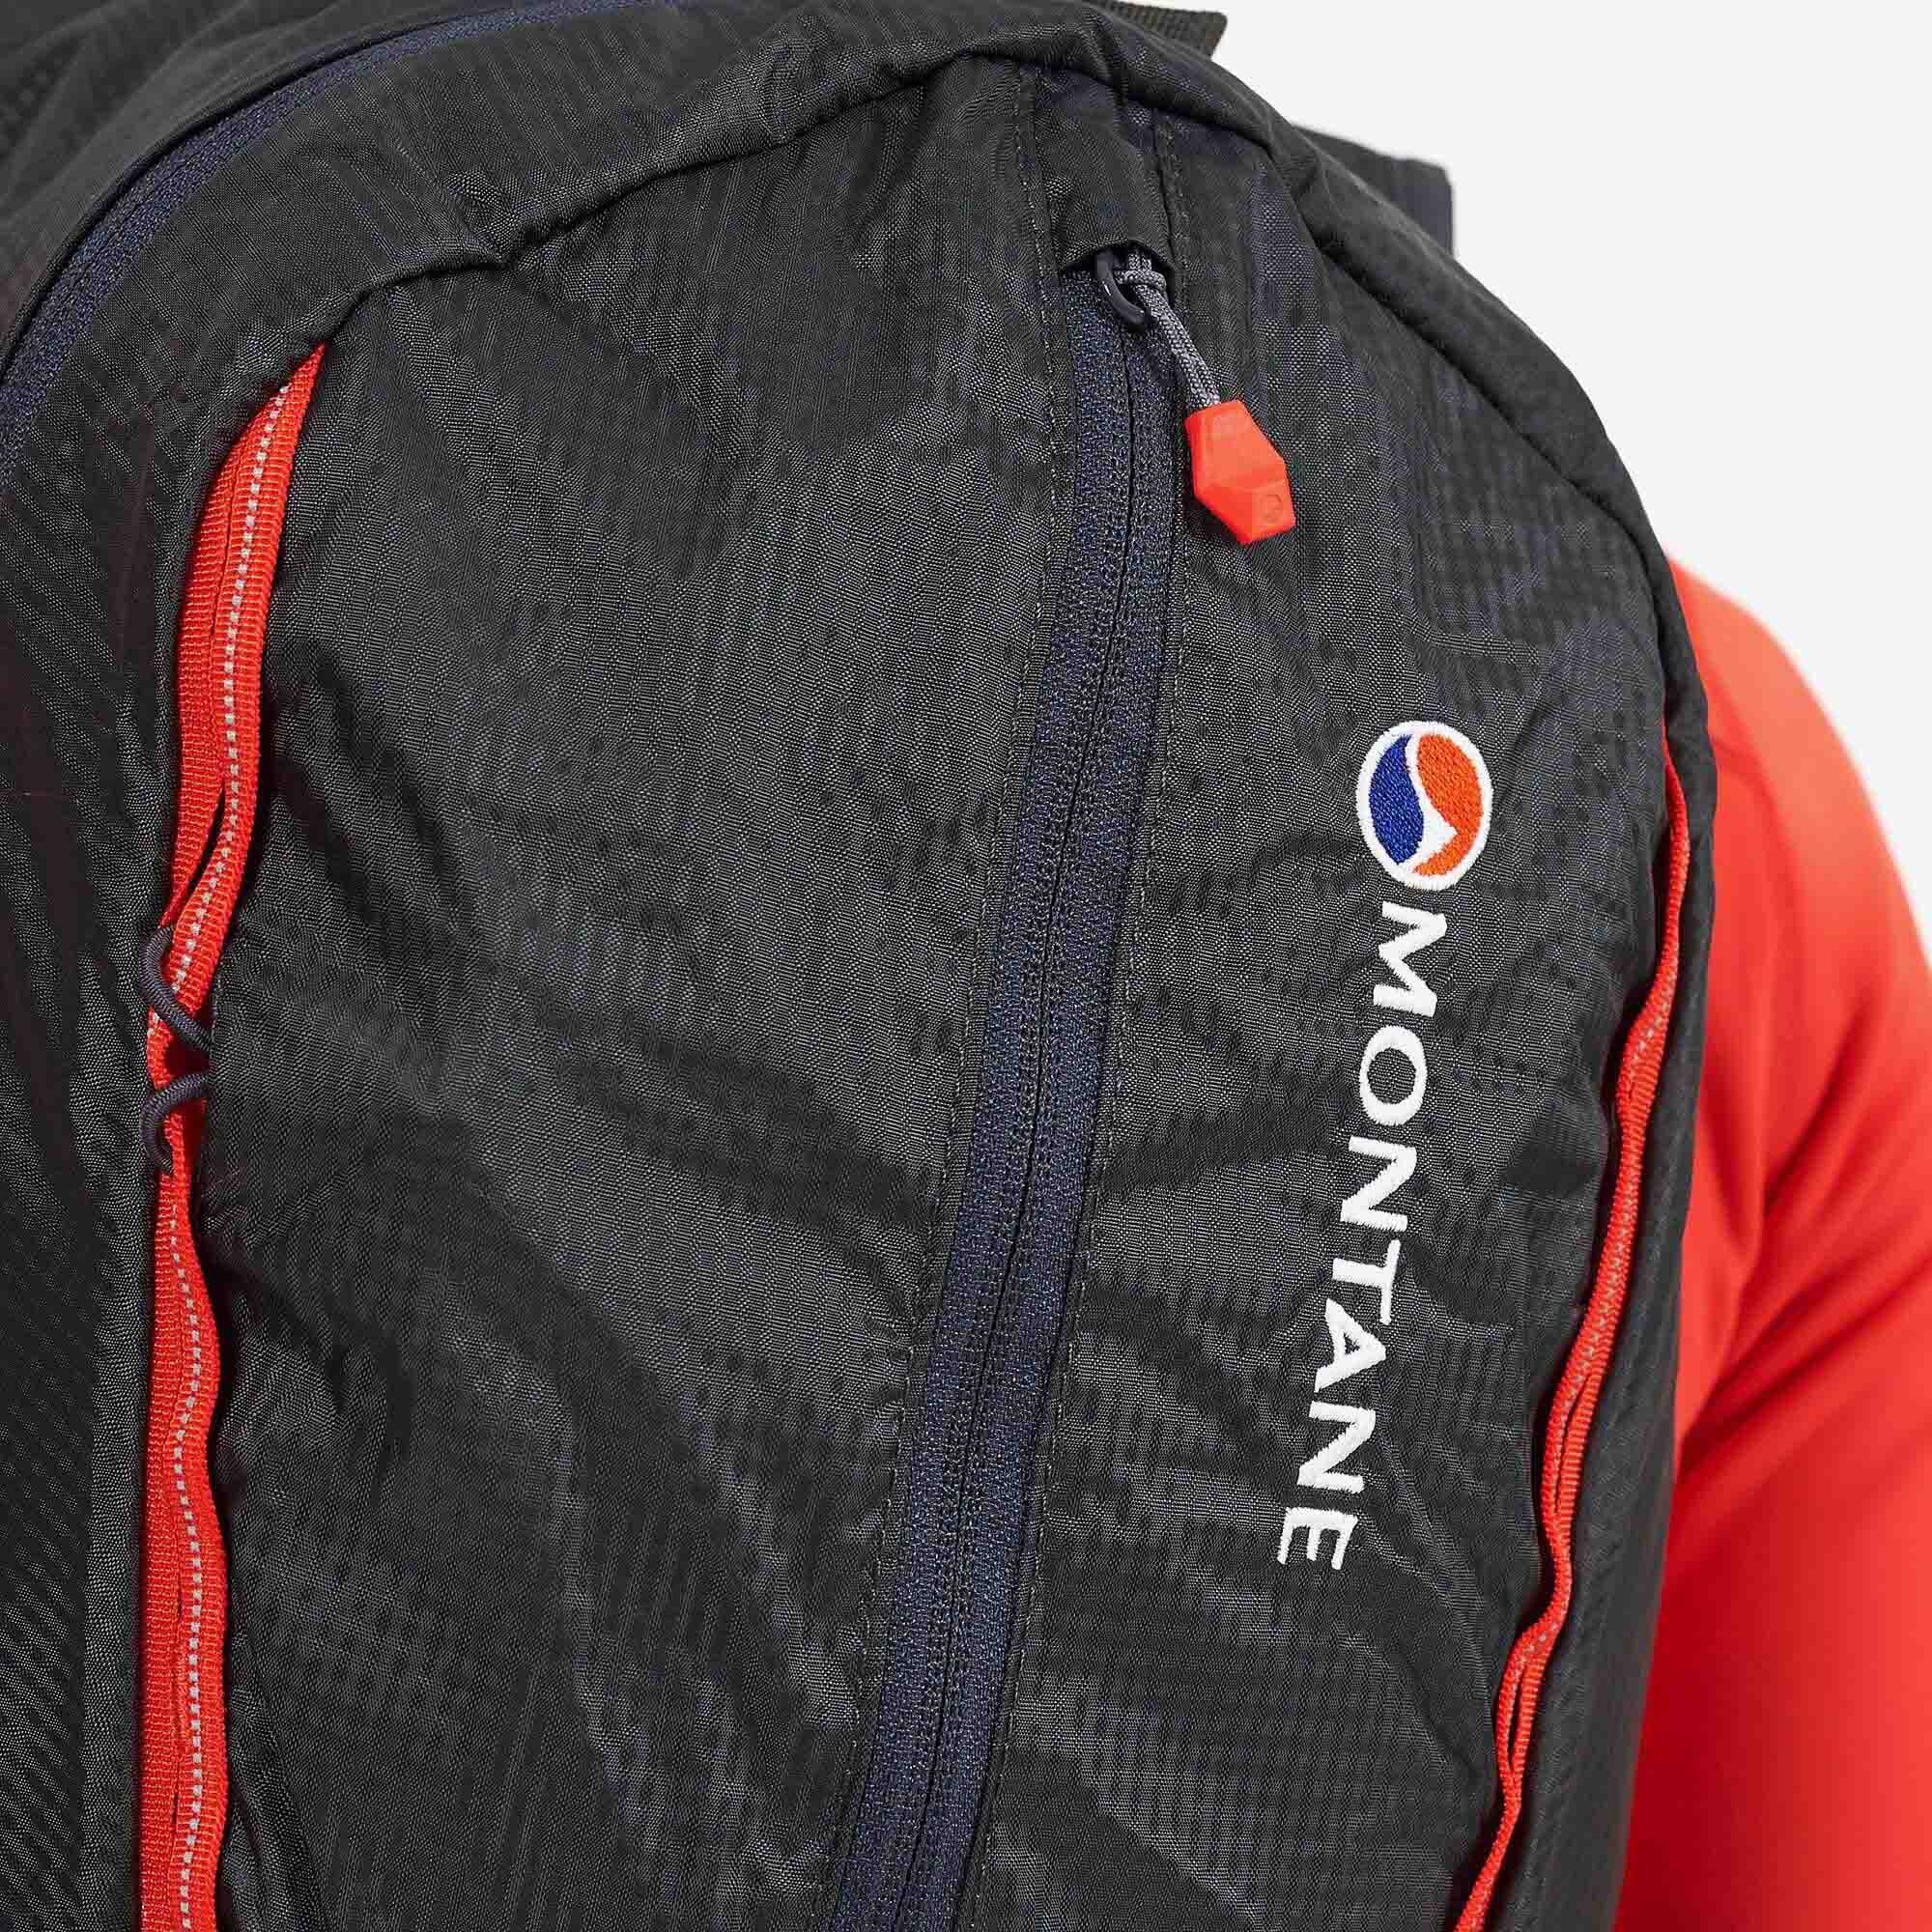 Montane Trailblazer 18 Technical Backpack